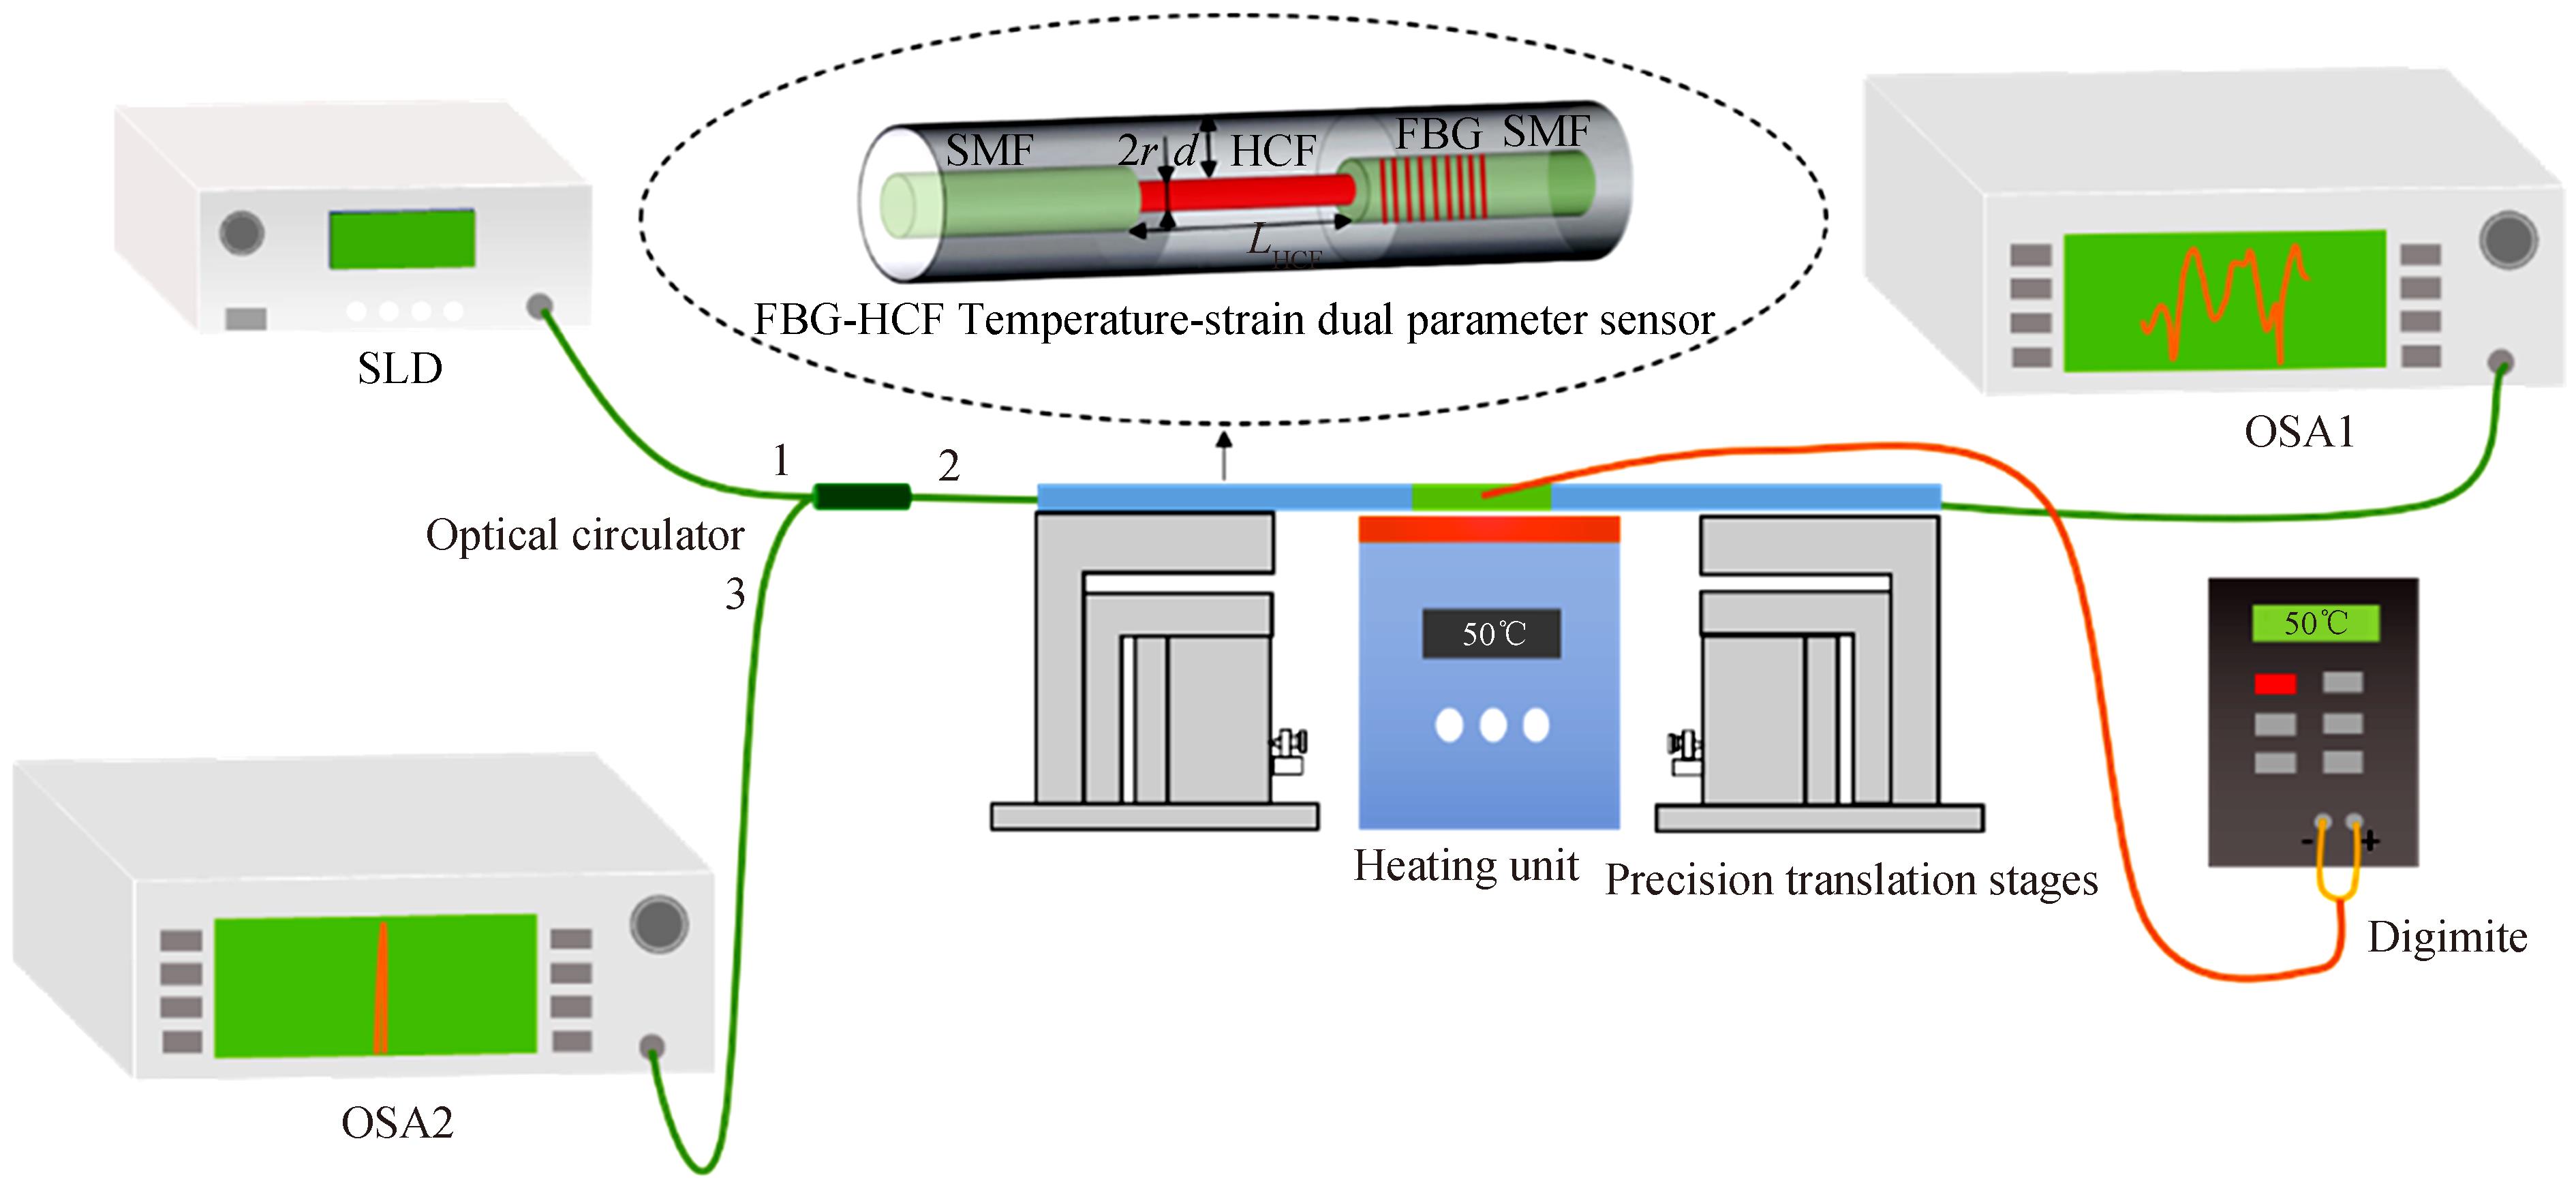 Experimental setup of the FBG-HCF temperature-strain dual-parameter sensing system